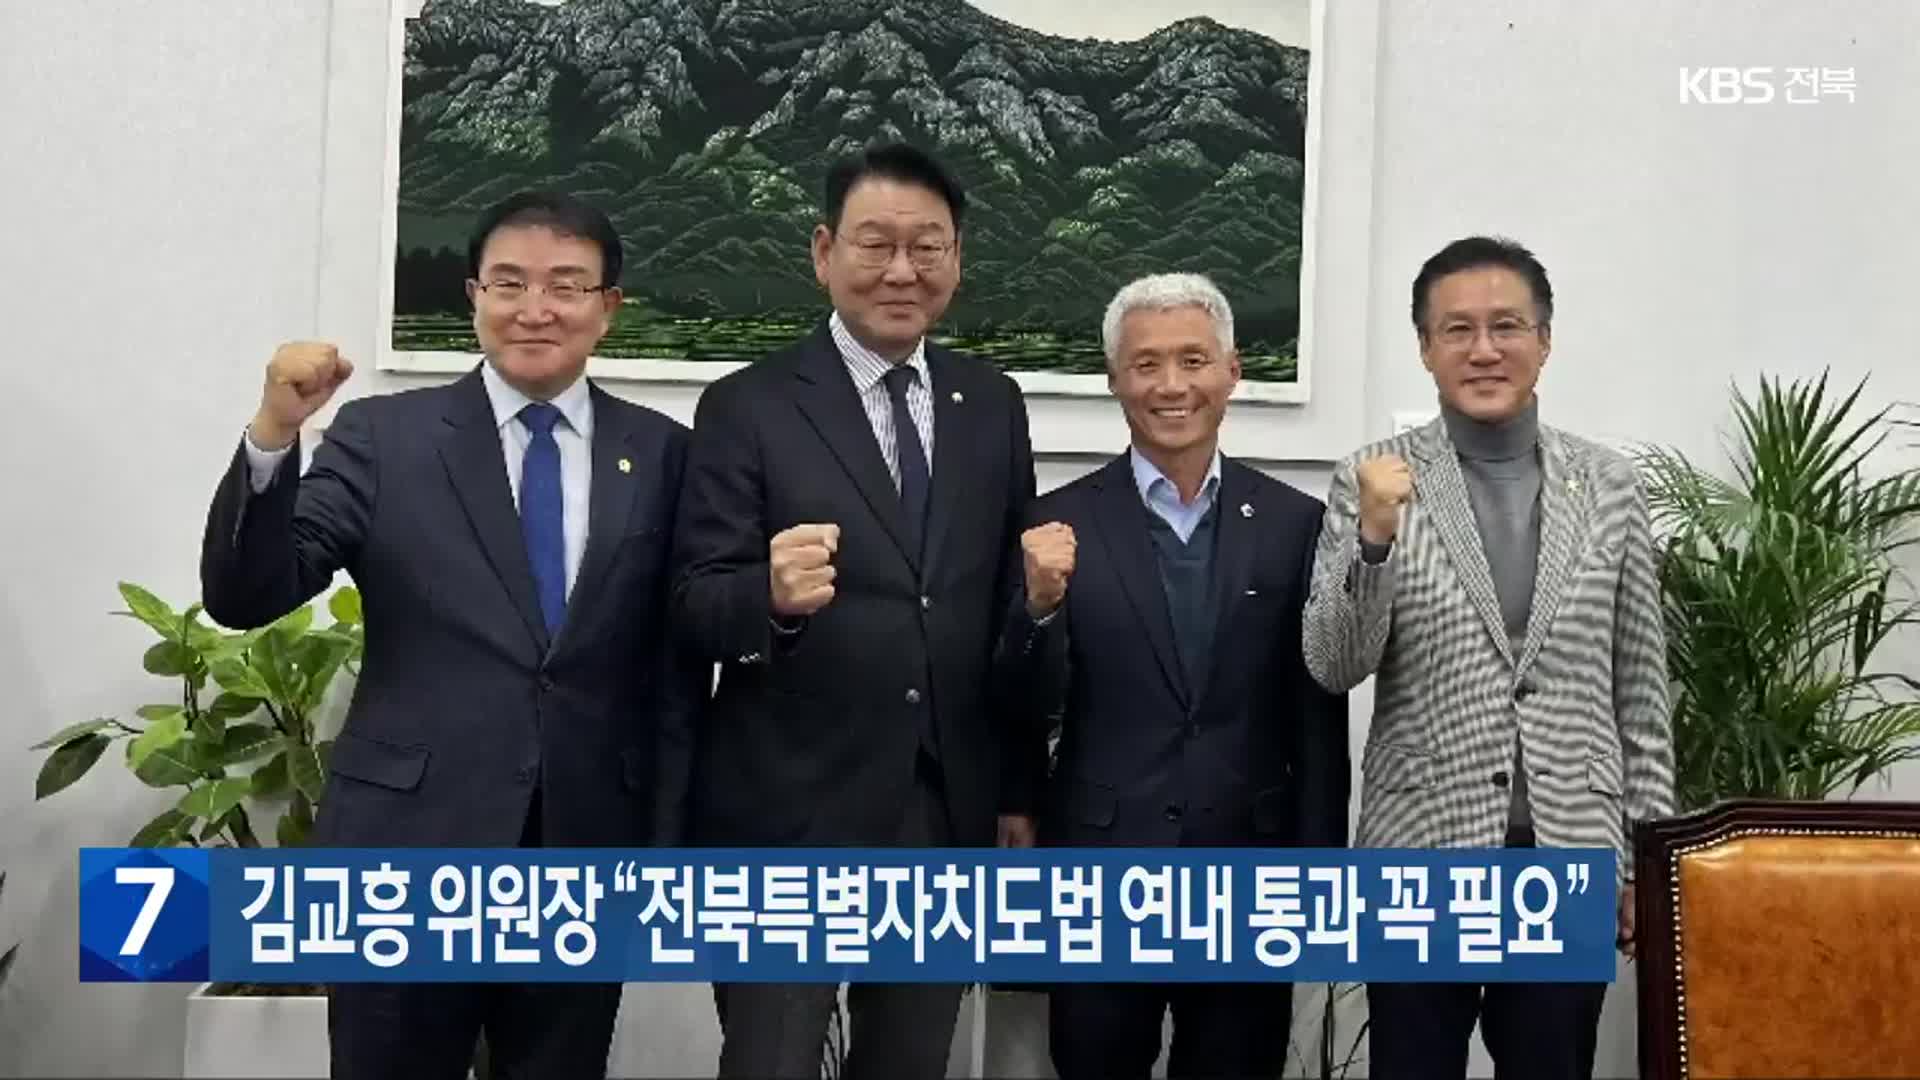 김교흥 위원장 “전북특별자치도법 연내 통과 꼭 필요”